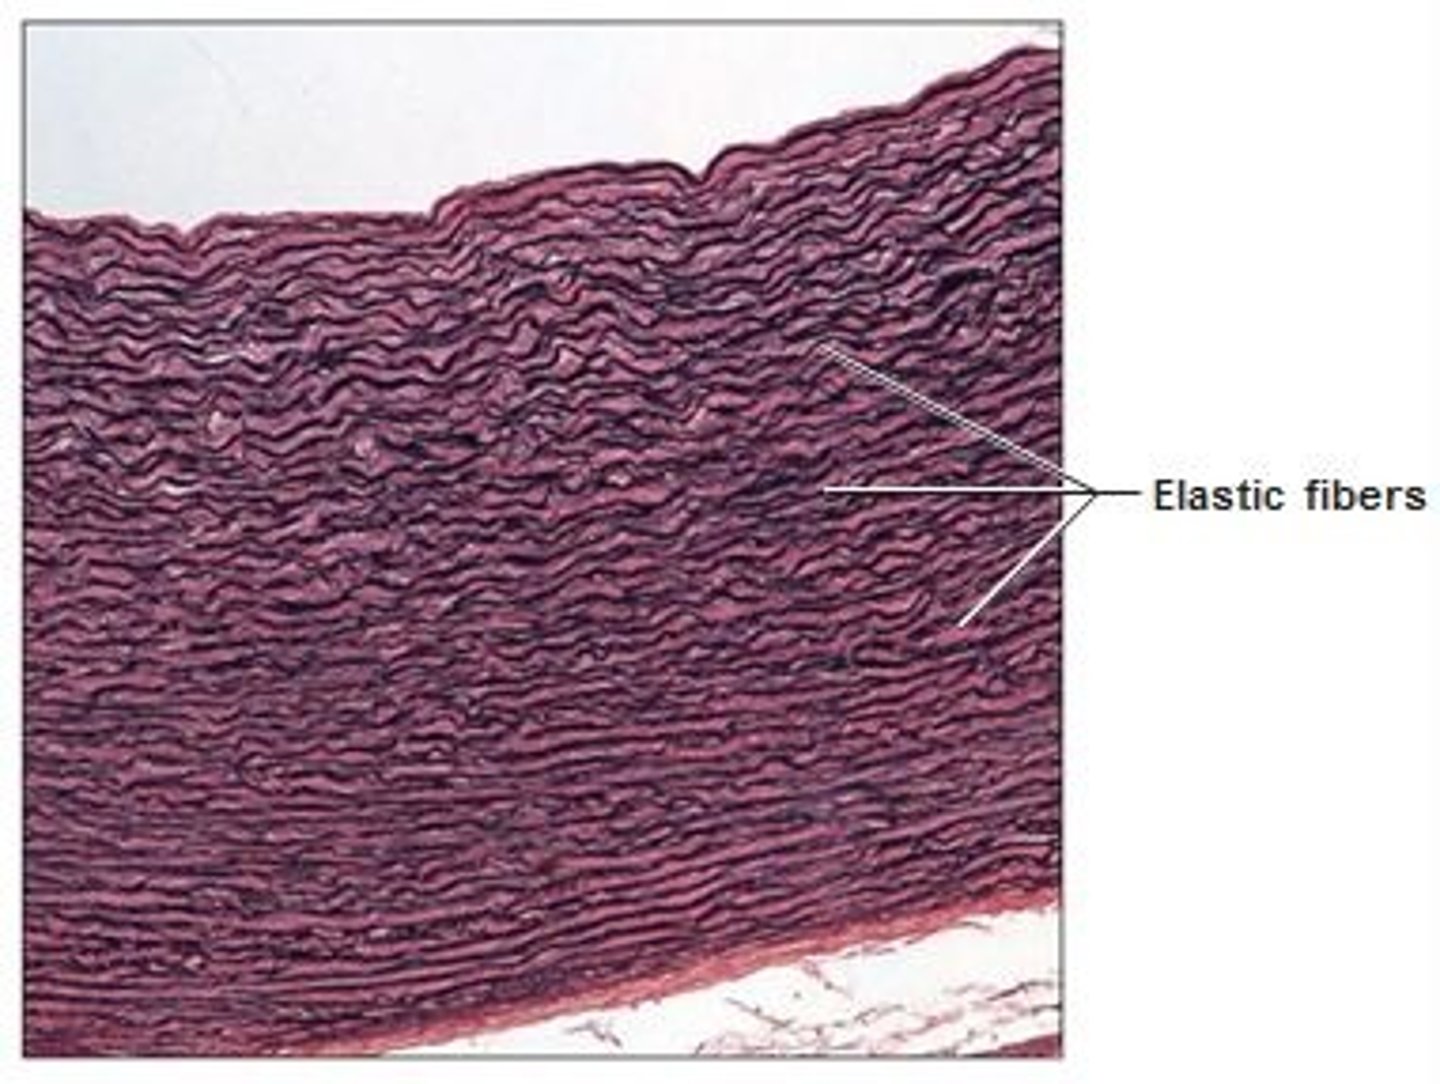 <p>- dense regular connective tissue containing alot of elastic fibres</p>